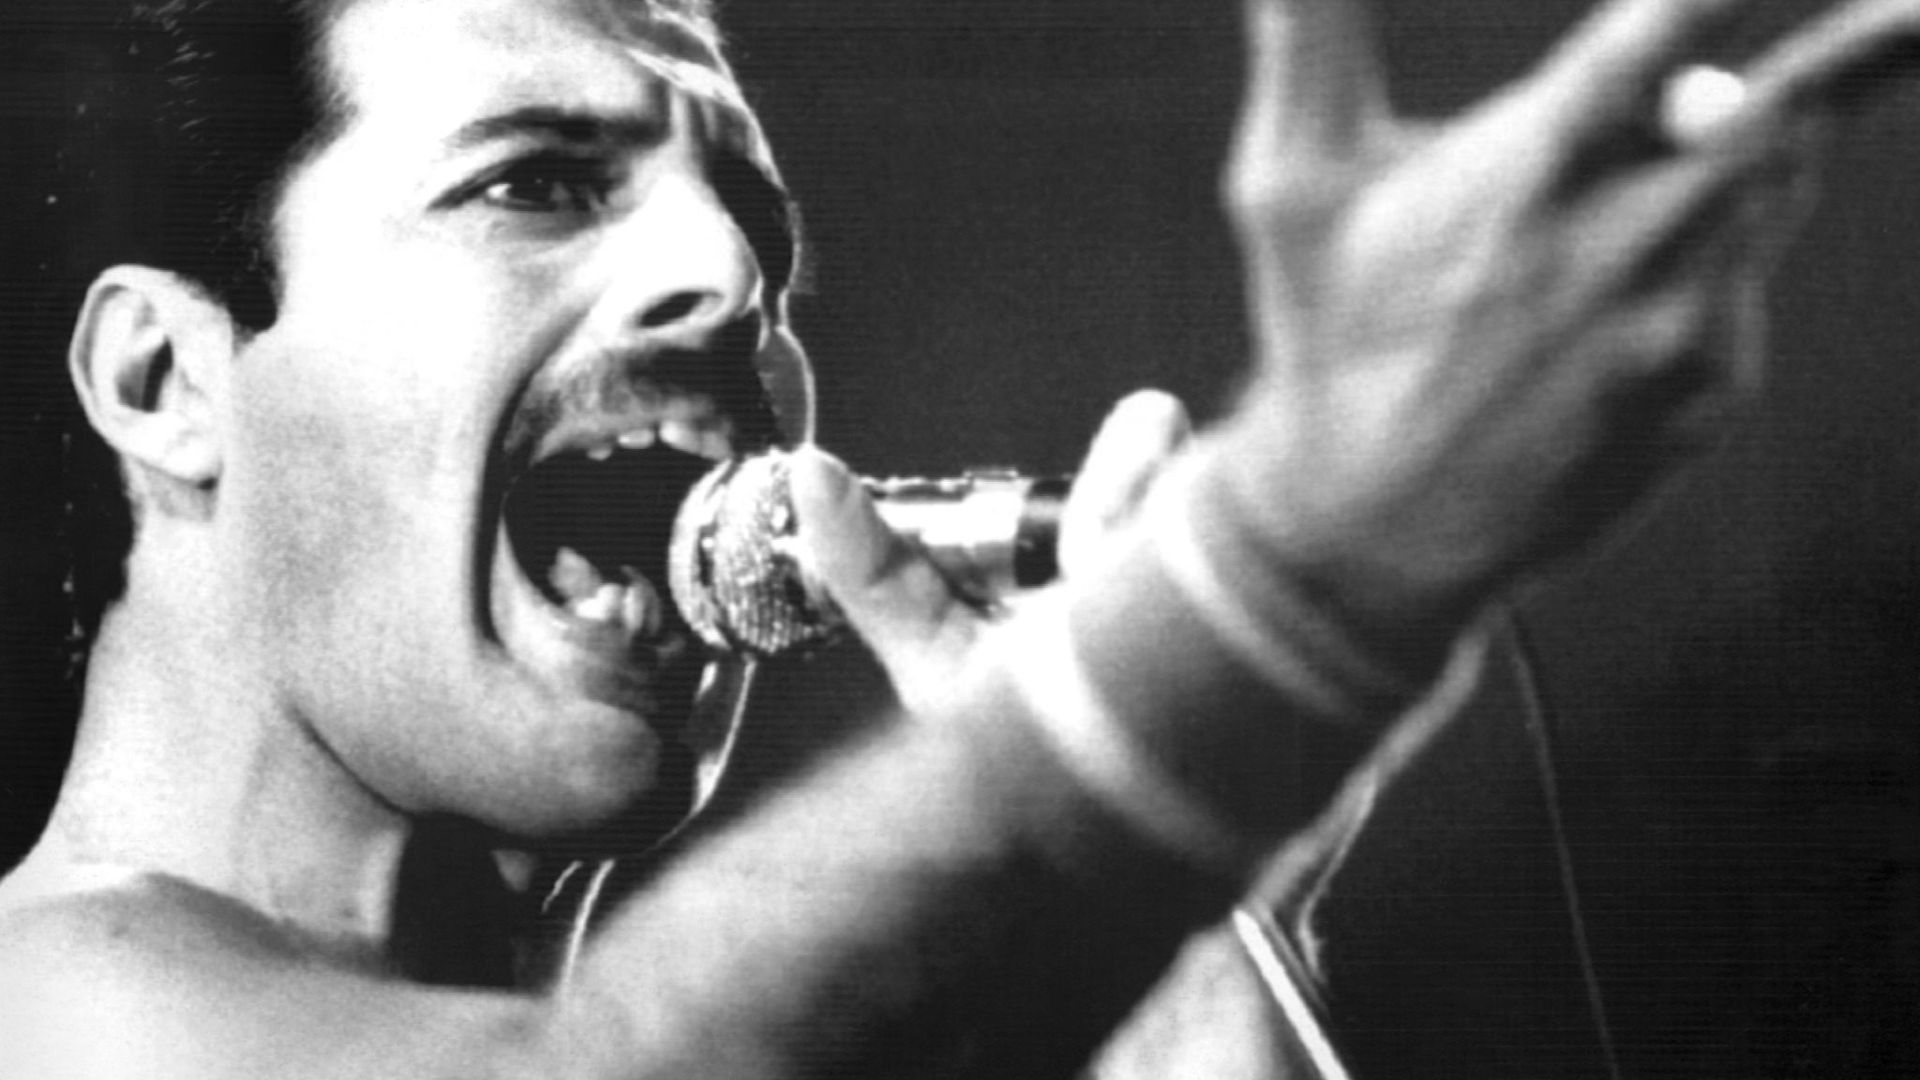 Freddie Mercury bei einem Auftritt im September 1984. Am 24.11. jährt sich der 30. Todestag des Sängers.